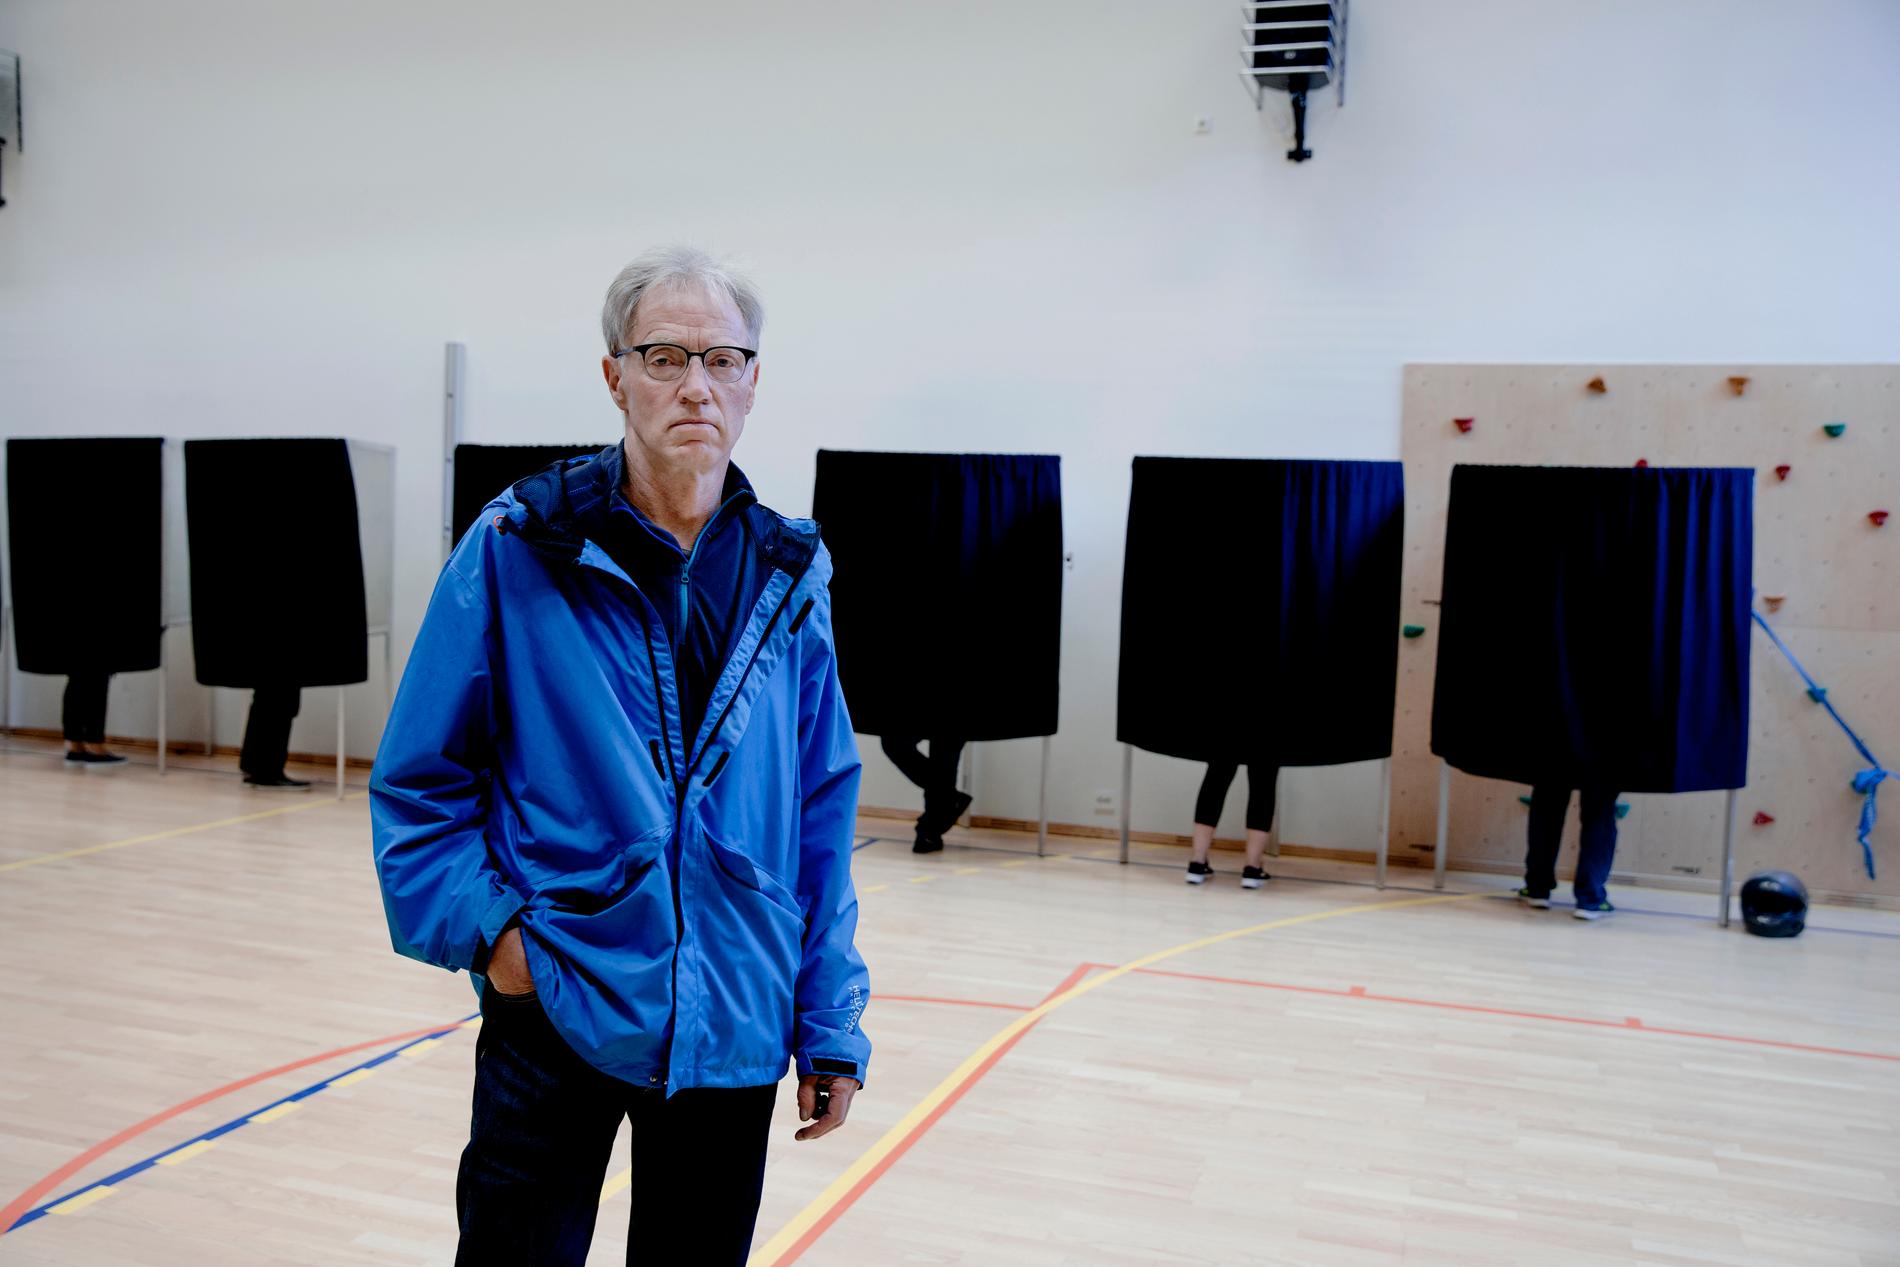 FIKK IKKE STEMME: - Jeg blir rett og slett sur, sier Reidar Toresen. Da han ankom valglokalet, fikk han ikke stemme på Miljøpartiet De Grønne. Han ble derfor nødt til å stemme på et annet parti.